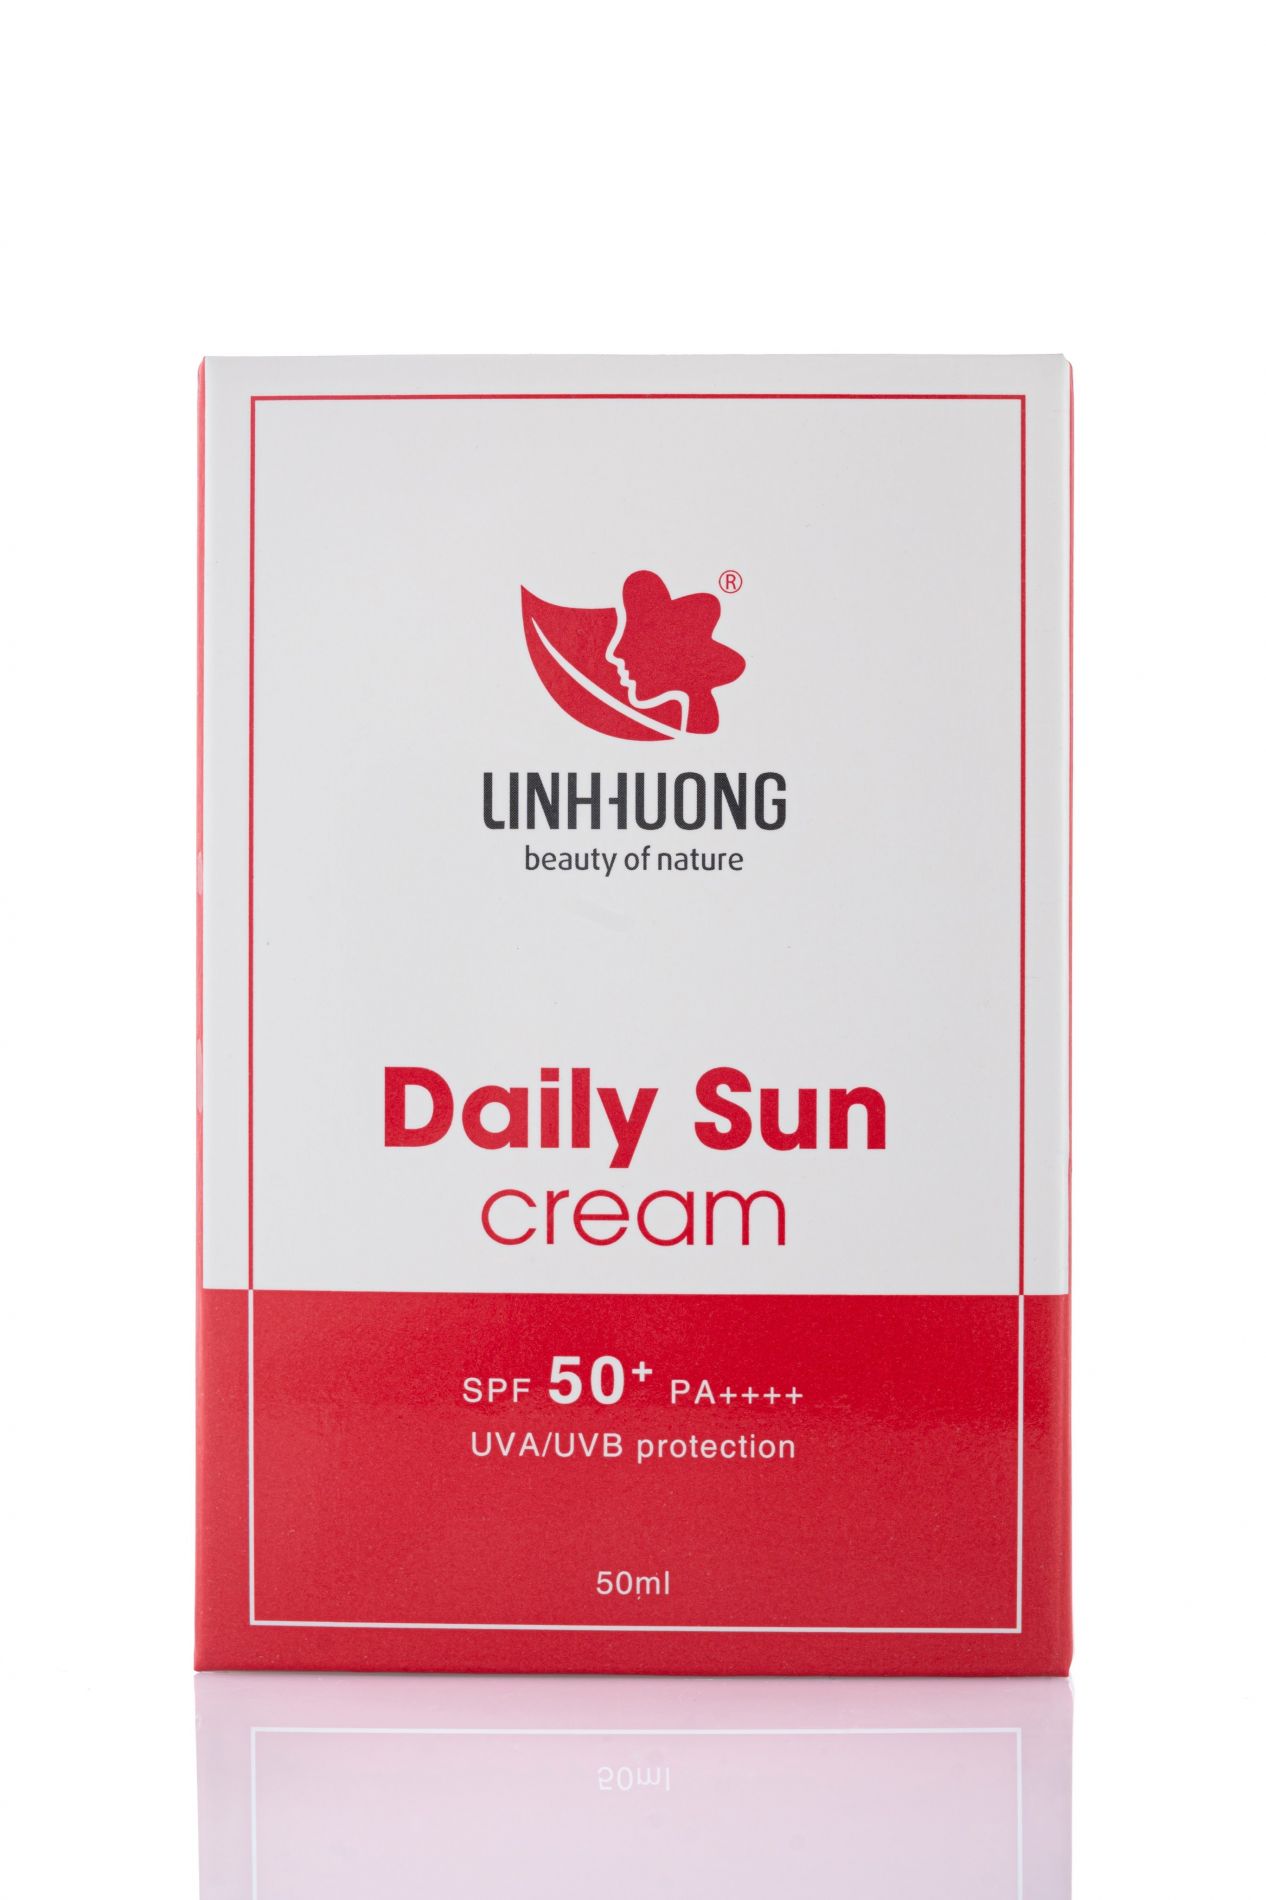 Kem Chống Nắng Daily Sun Linh Hương SPF+++/PA+++ 50ml bảo vệ đa tầng cho da, chống tia UVA/UVB 